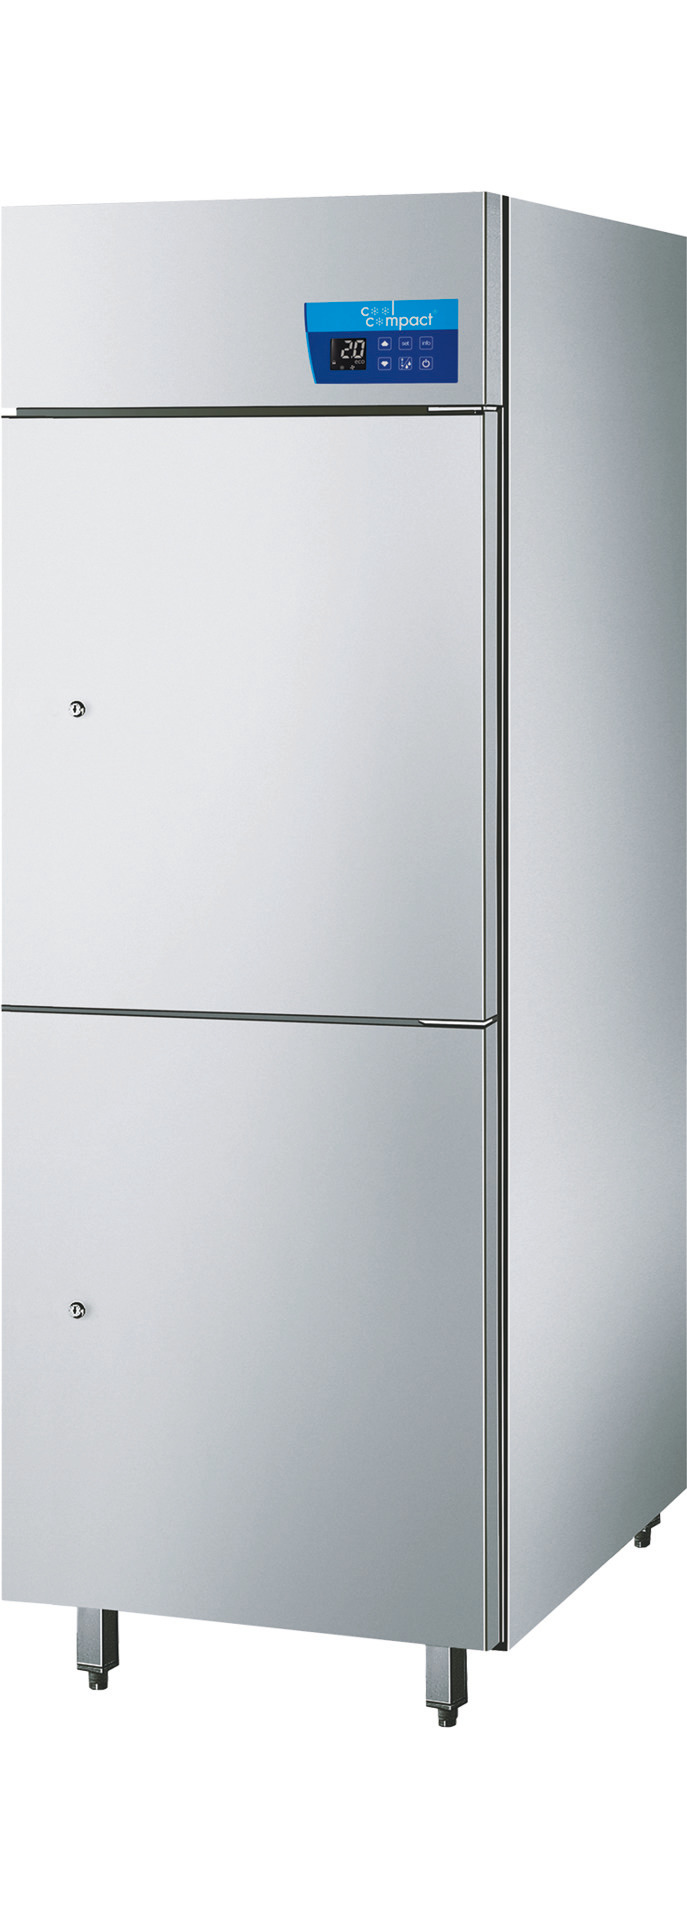 Umluft-Kühlschrank mit 2 Türen /  20 x GN 2/1 / steckerfertig